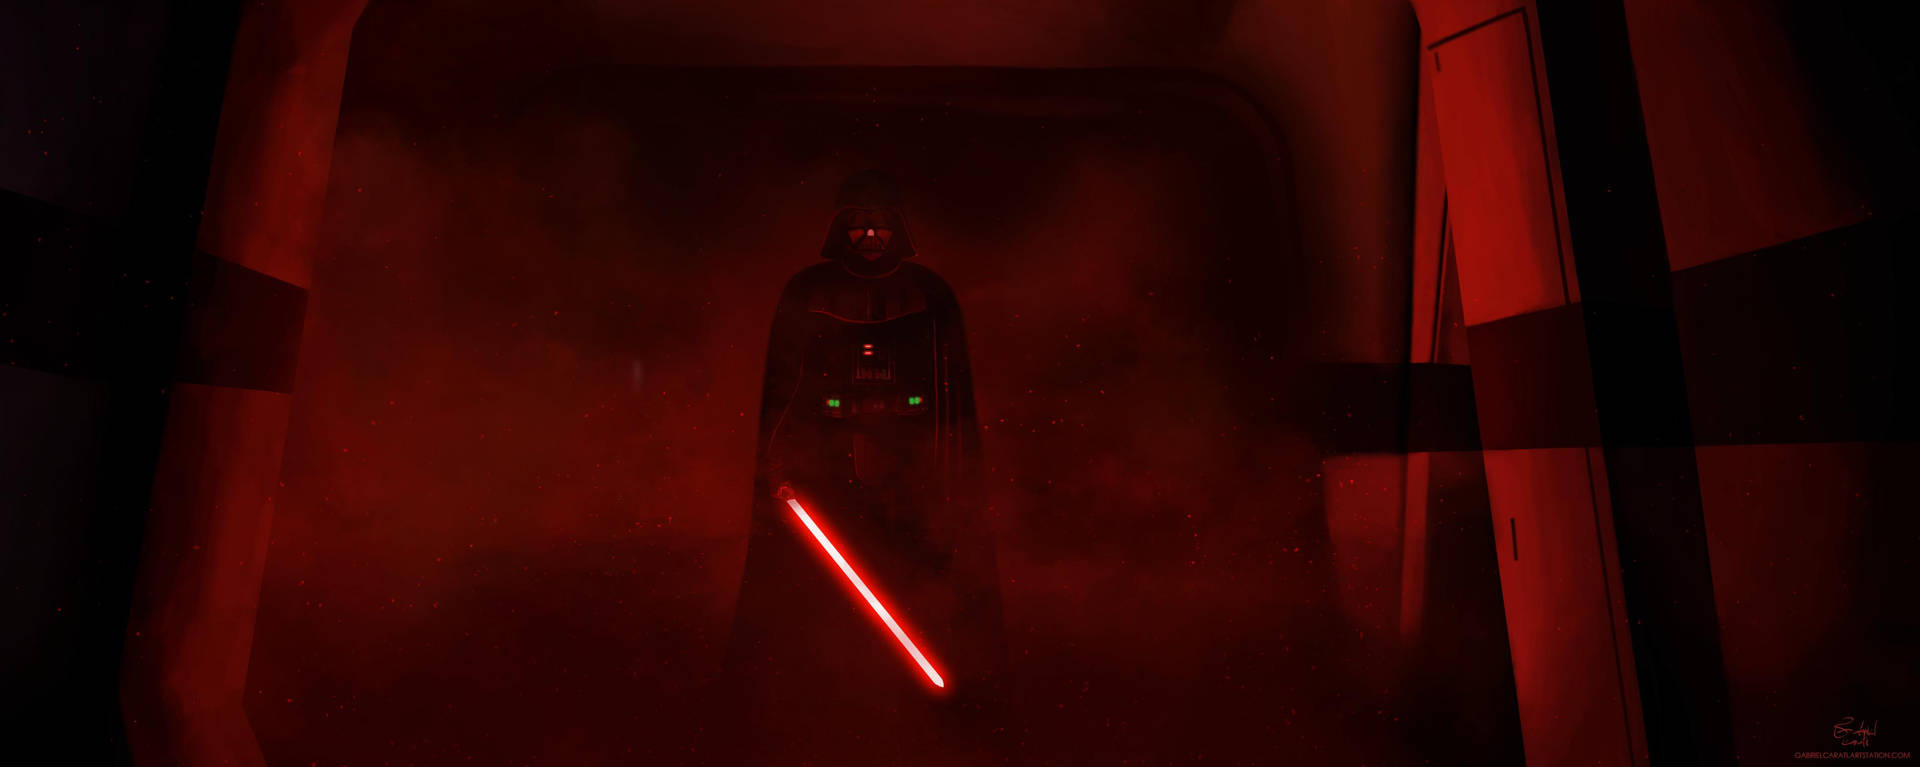 Sinister Darth Vader 4k Background